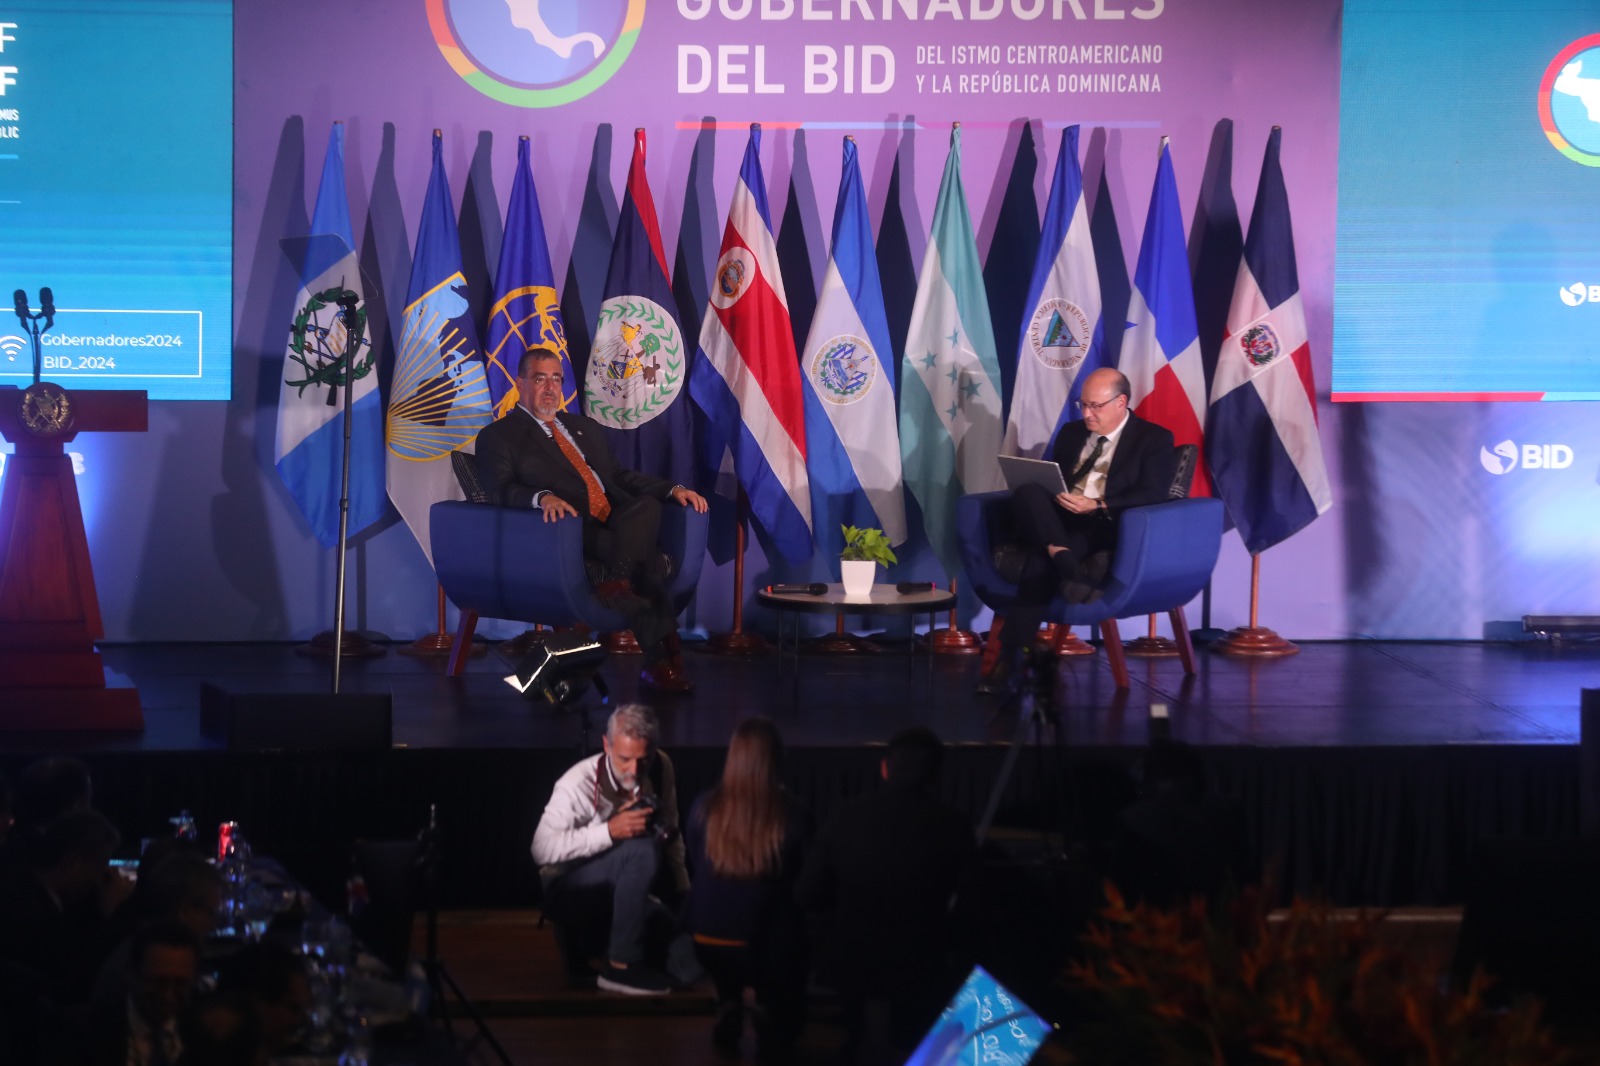 El mandatario Bernardo Arévalo participó en el acto inaugural de la 37 asamblea de gobernadores del BID, y conversa con el presidente de ese organismo internacional Ilan Godfajn. (Foto Prensa Libre: Juan Diego González) 